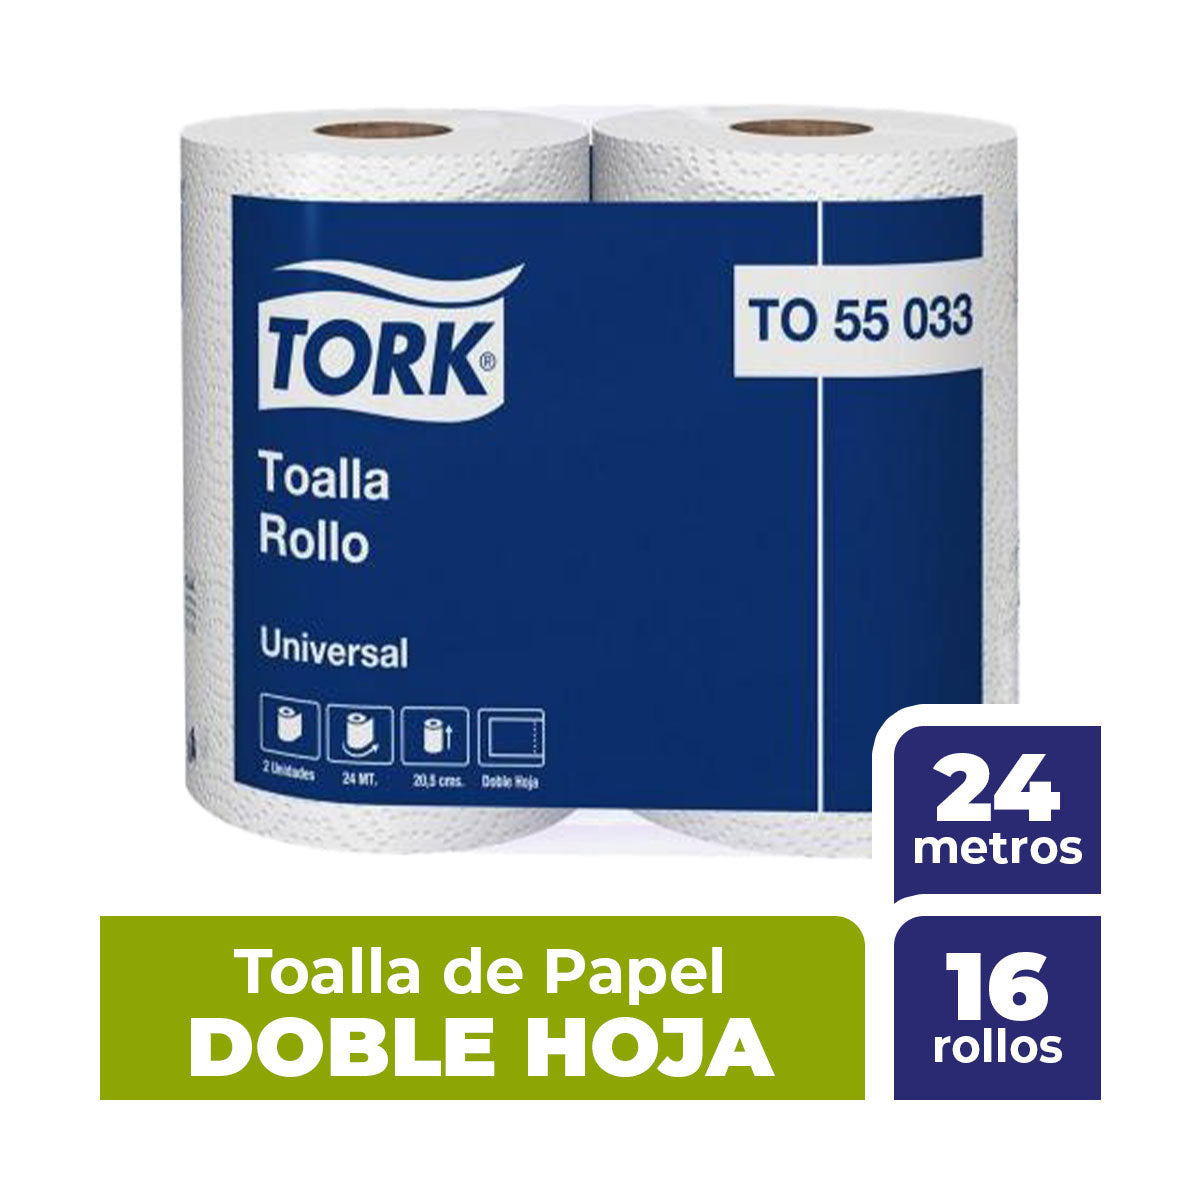 Toalla De Papel Doble Hoja 24m 16 Rollos Tork (55046)